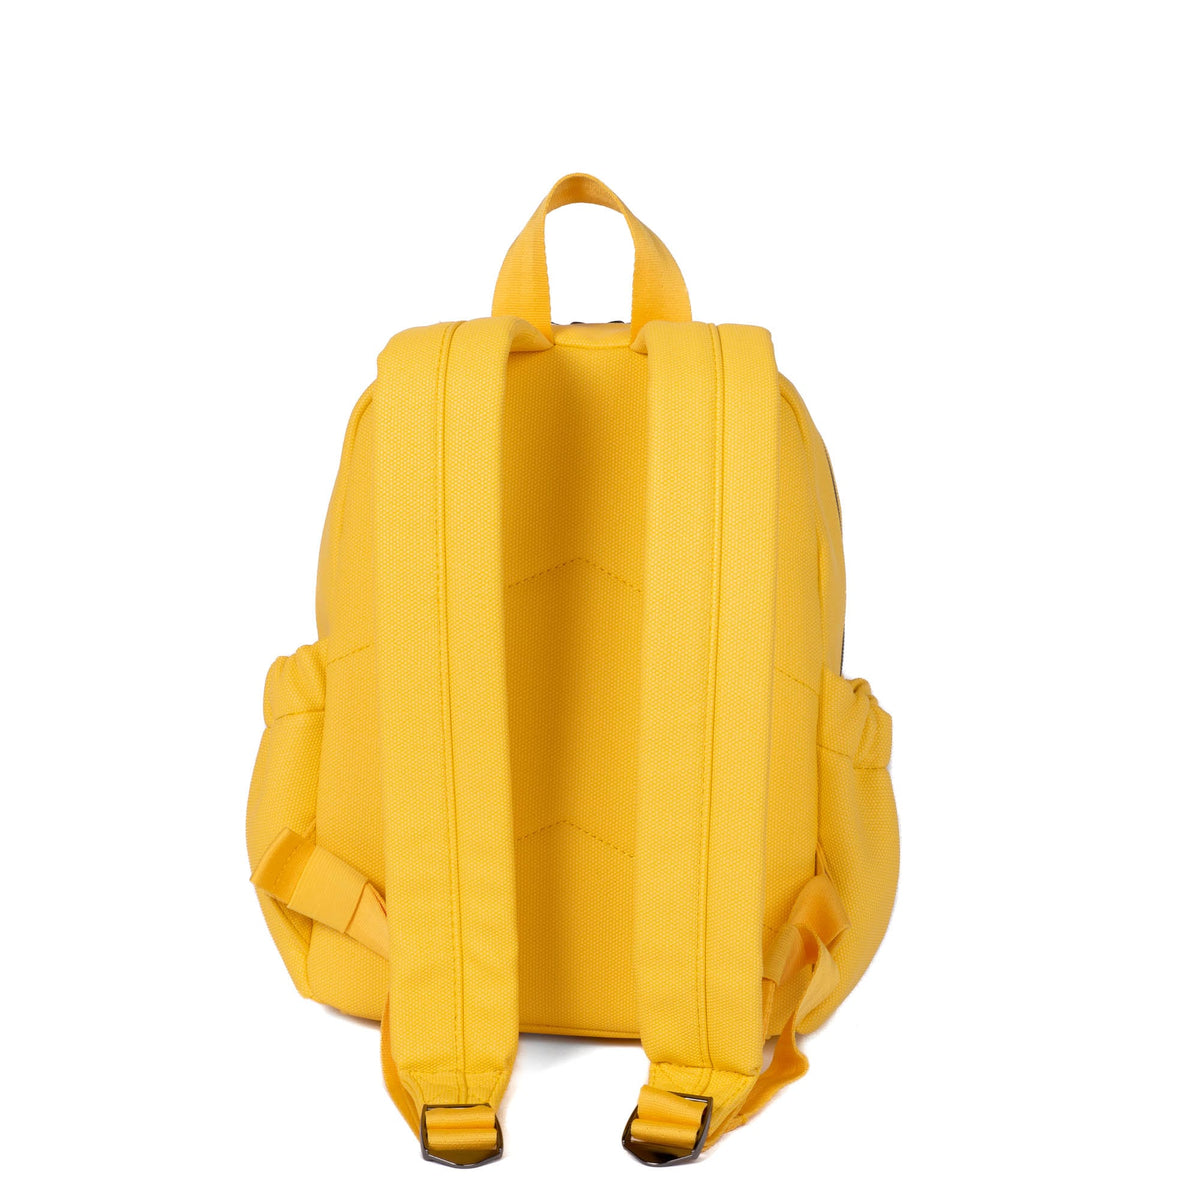 Love & Sports Women's Louie Backpack, Orbit Yellow